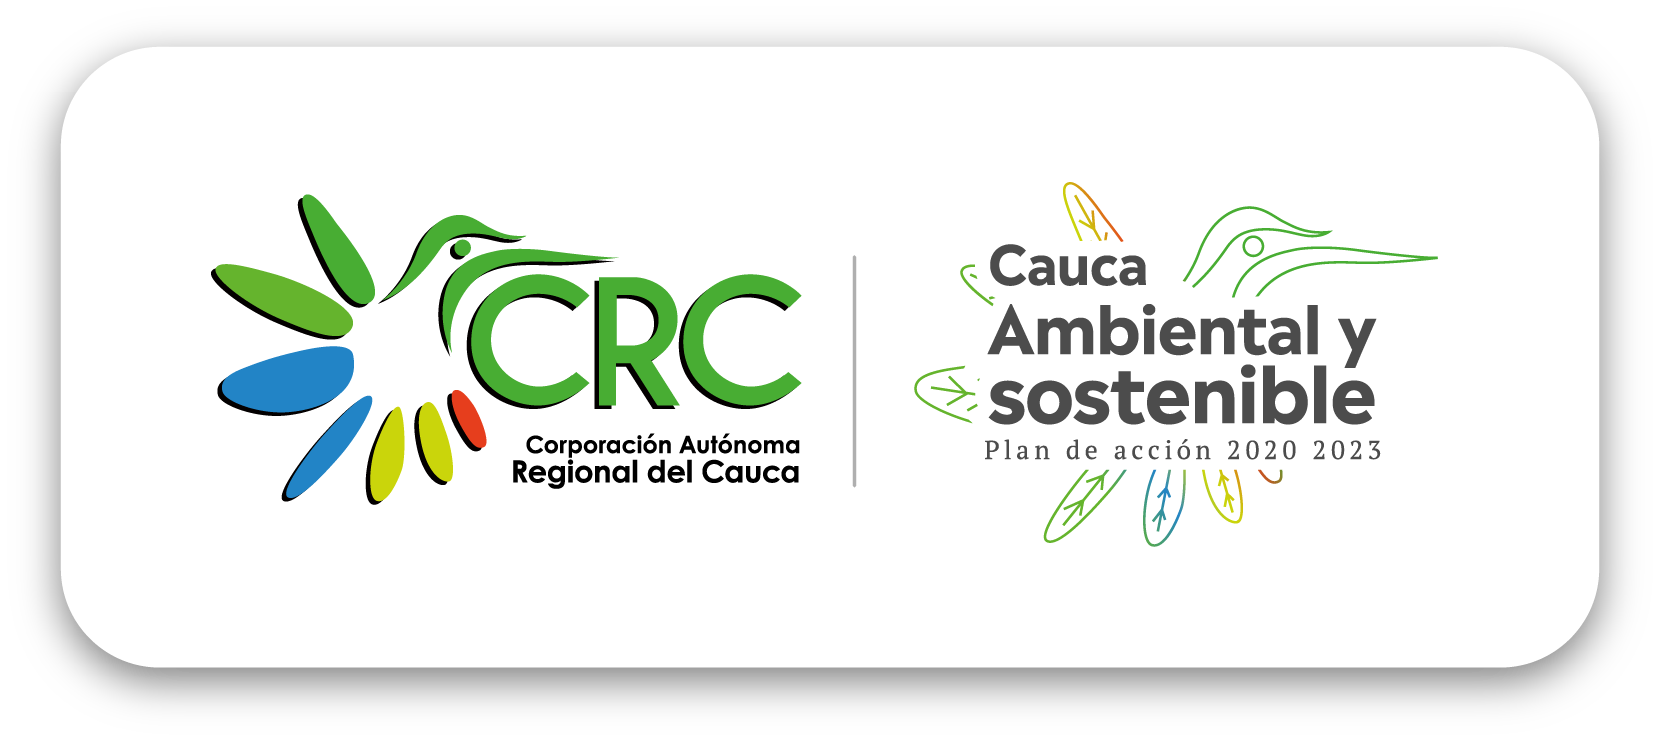 Corporación Autónoma Regional del Cauca